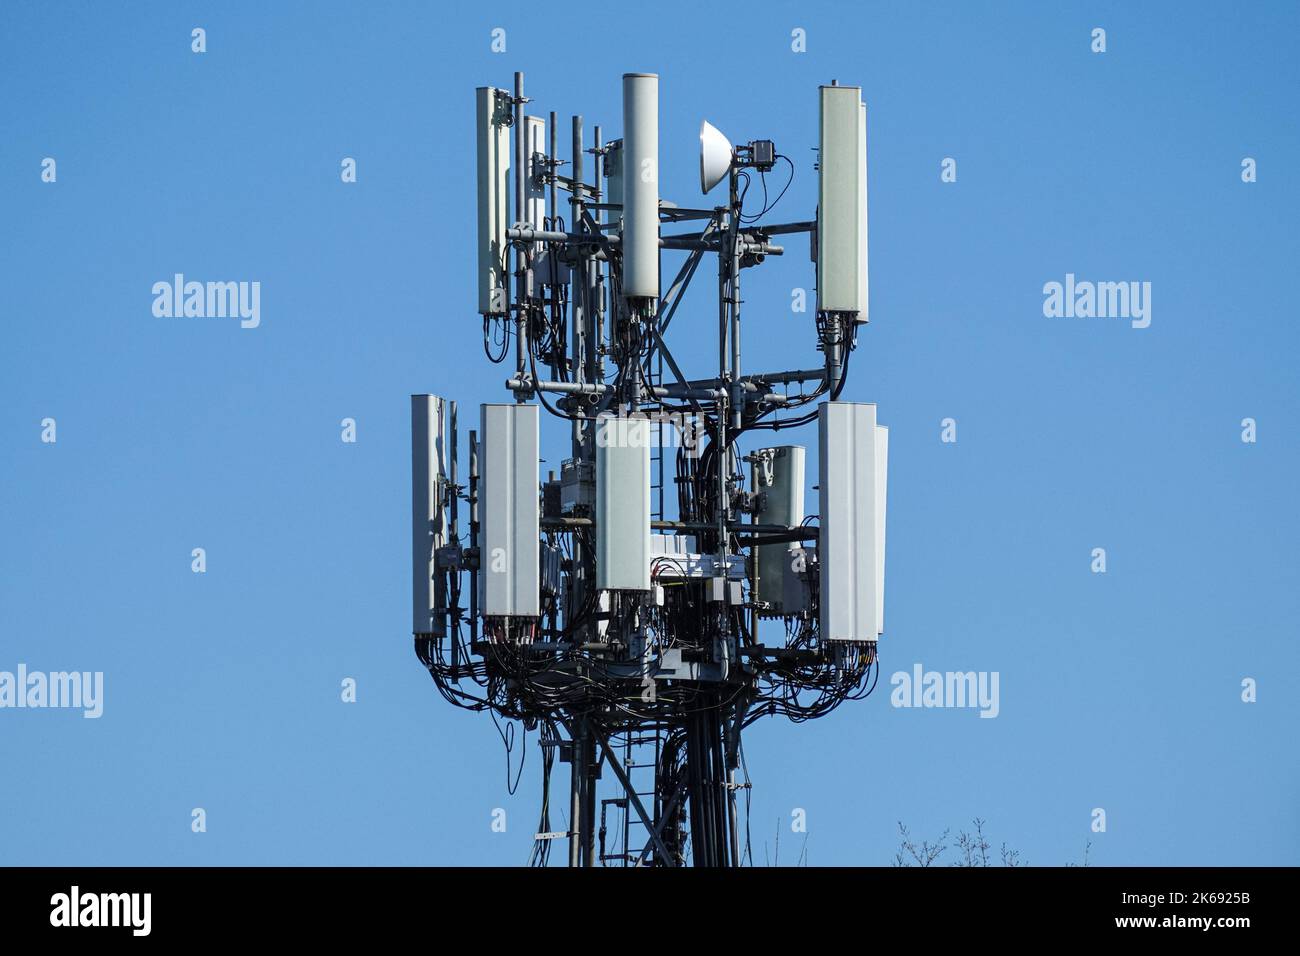 Cellulare, cellulare torre di telecomunicazione con antenne su cielo blu Foto Stock